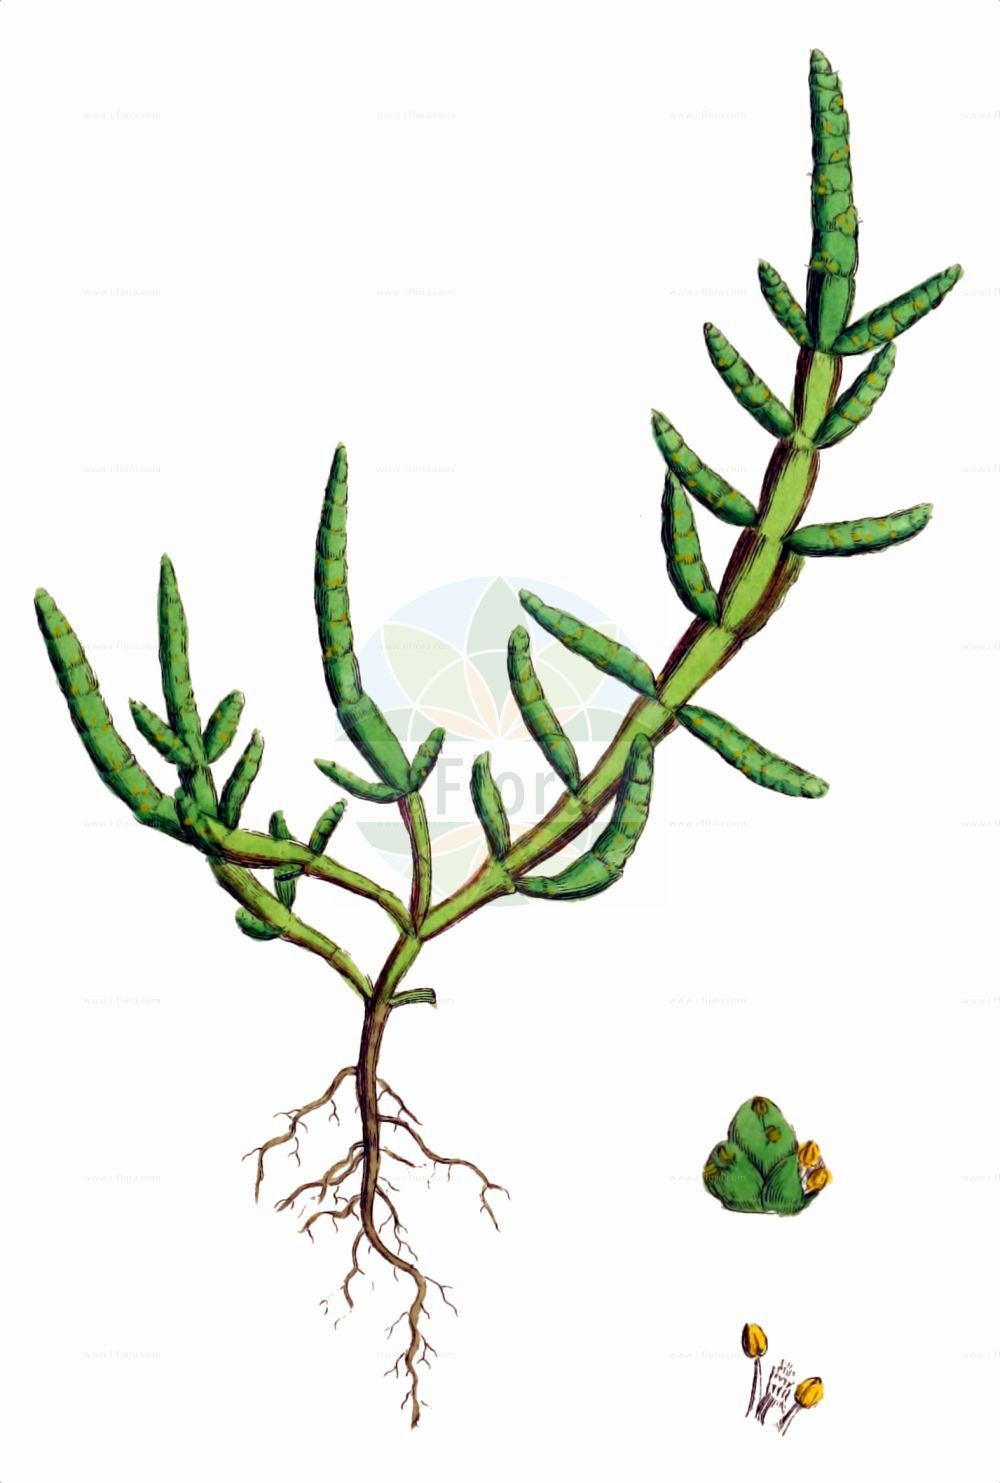 Historische Abbildung von Salicornia procumbens (Sandwatt-Queller - Yellow Glasswort). Das Bild zeigt Blatt, Bluete, Frucht und Same. ---- Historical Drawing of Salicornia procumbens (Sandwatt-Queller - Yellow Glasswort). The image is showing leaf, flower, fruit and seed.(Salicornia procumbens,Sandwatt-Queller,Yellow Glasswort,Salicornia dolichostachya,Salicornia oliveri,Salicornia procumbens,Salicornia stricta subsp. procumbens,,Sandwatt-Queller,Yellow Glasswort,Long-spiked Glasswort,Salicornia,Queller,Glassworts,Amaranthaceae,Fuchsschwanzgewächse,Pigweed family,Blatt,Bluete,Frucht,Same,leaf,flower,fruit,seed,Sowerby (1790-1813))